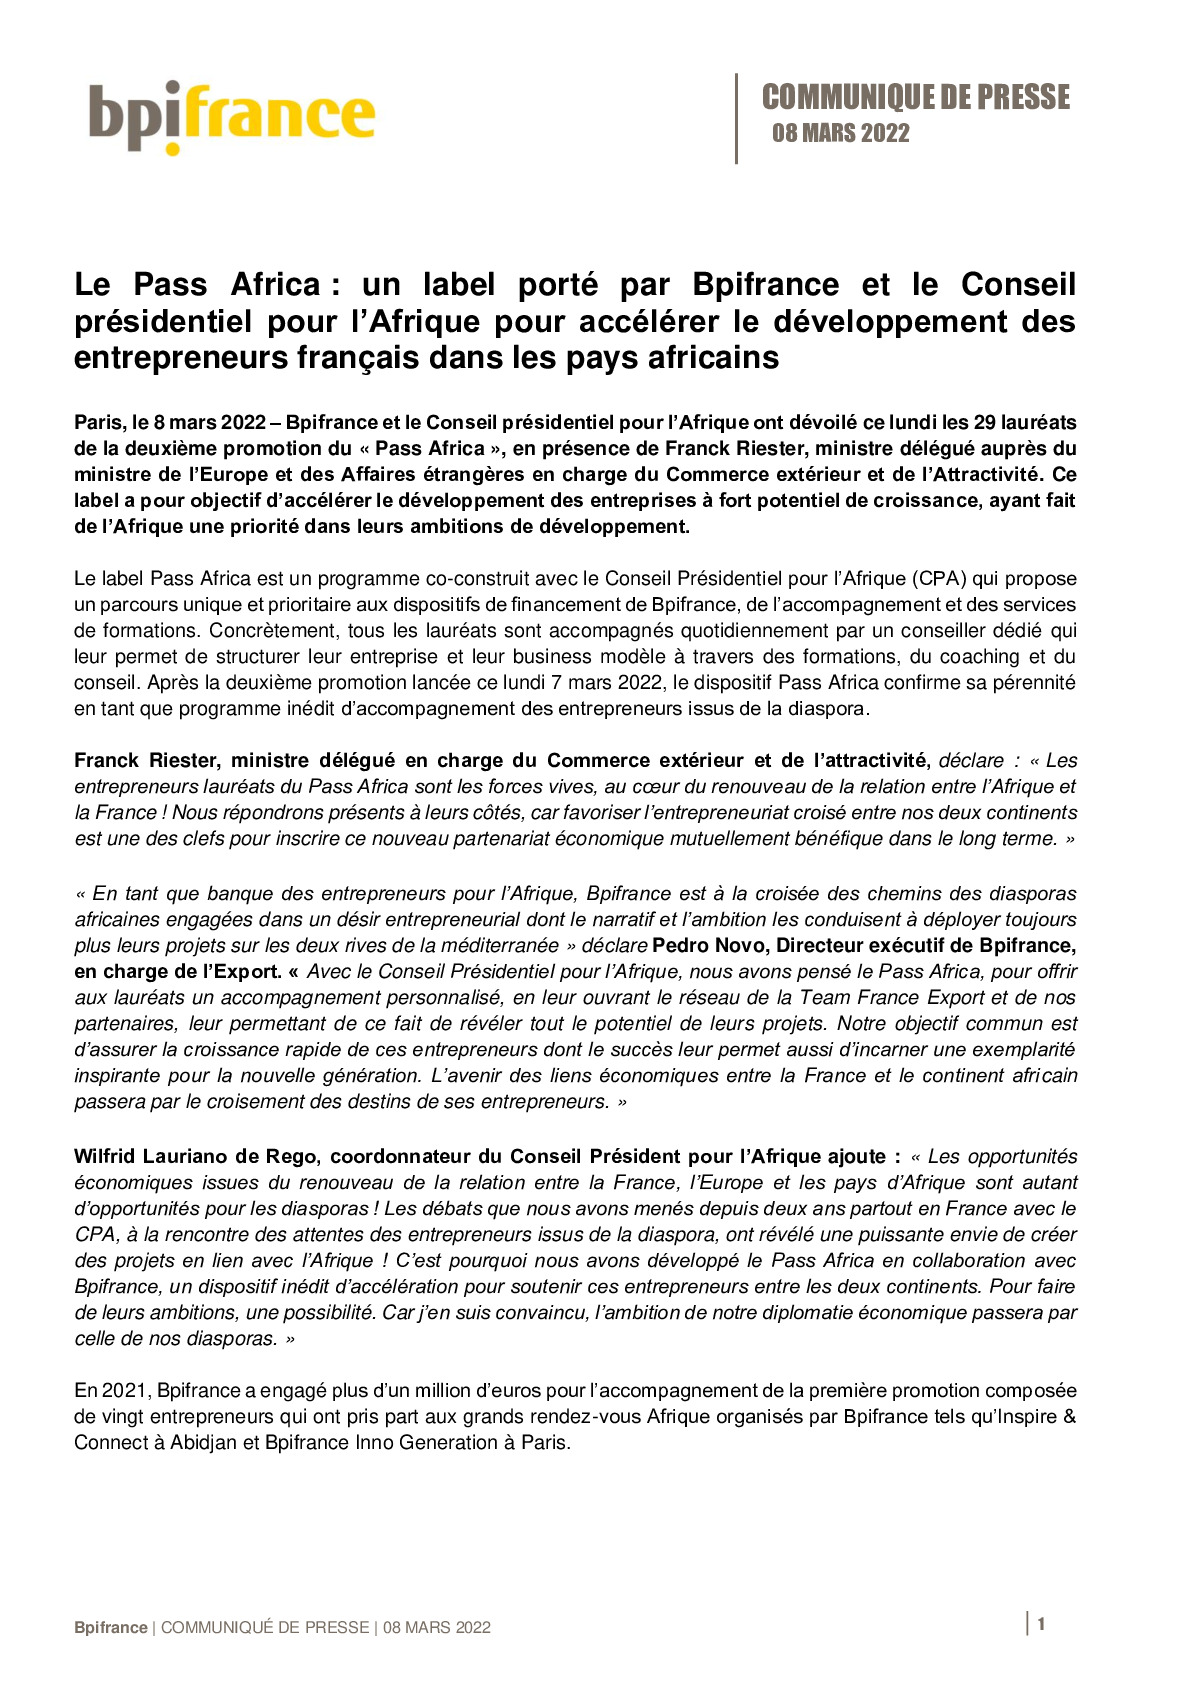 2022 03 08 – CP Le Pass Africa un label porte par Bpifrance et le Conseil presidentiel pour lAfrique-pdf